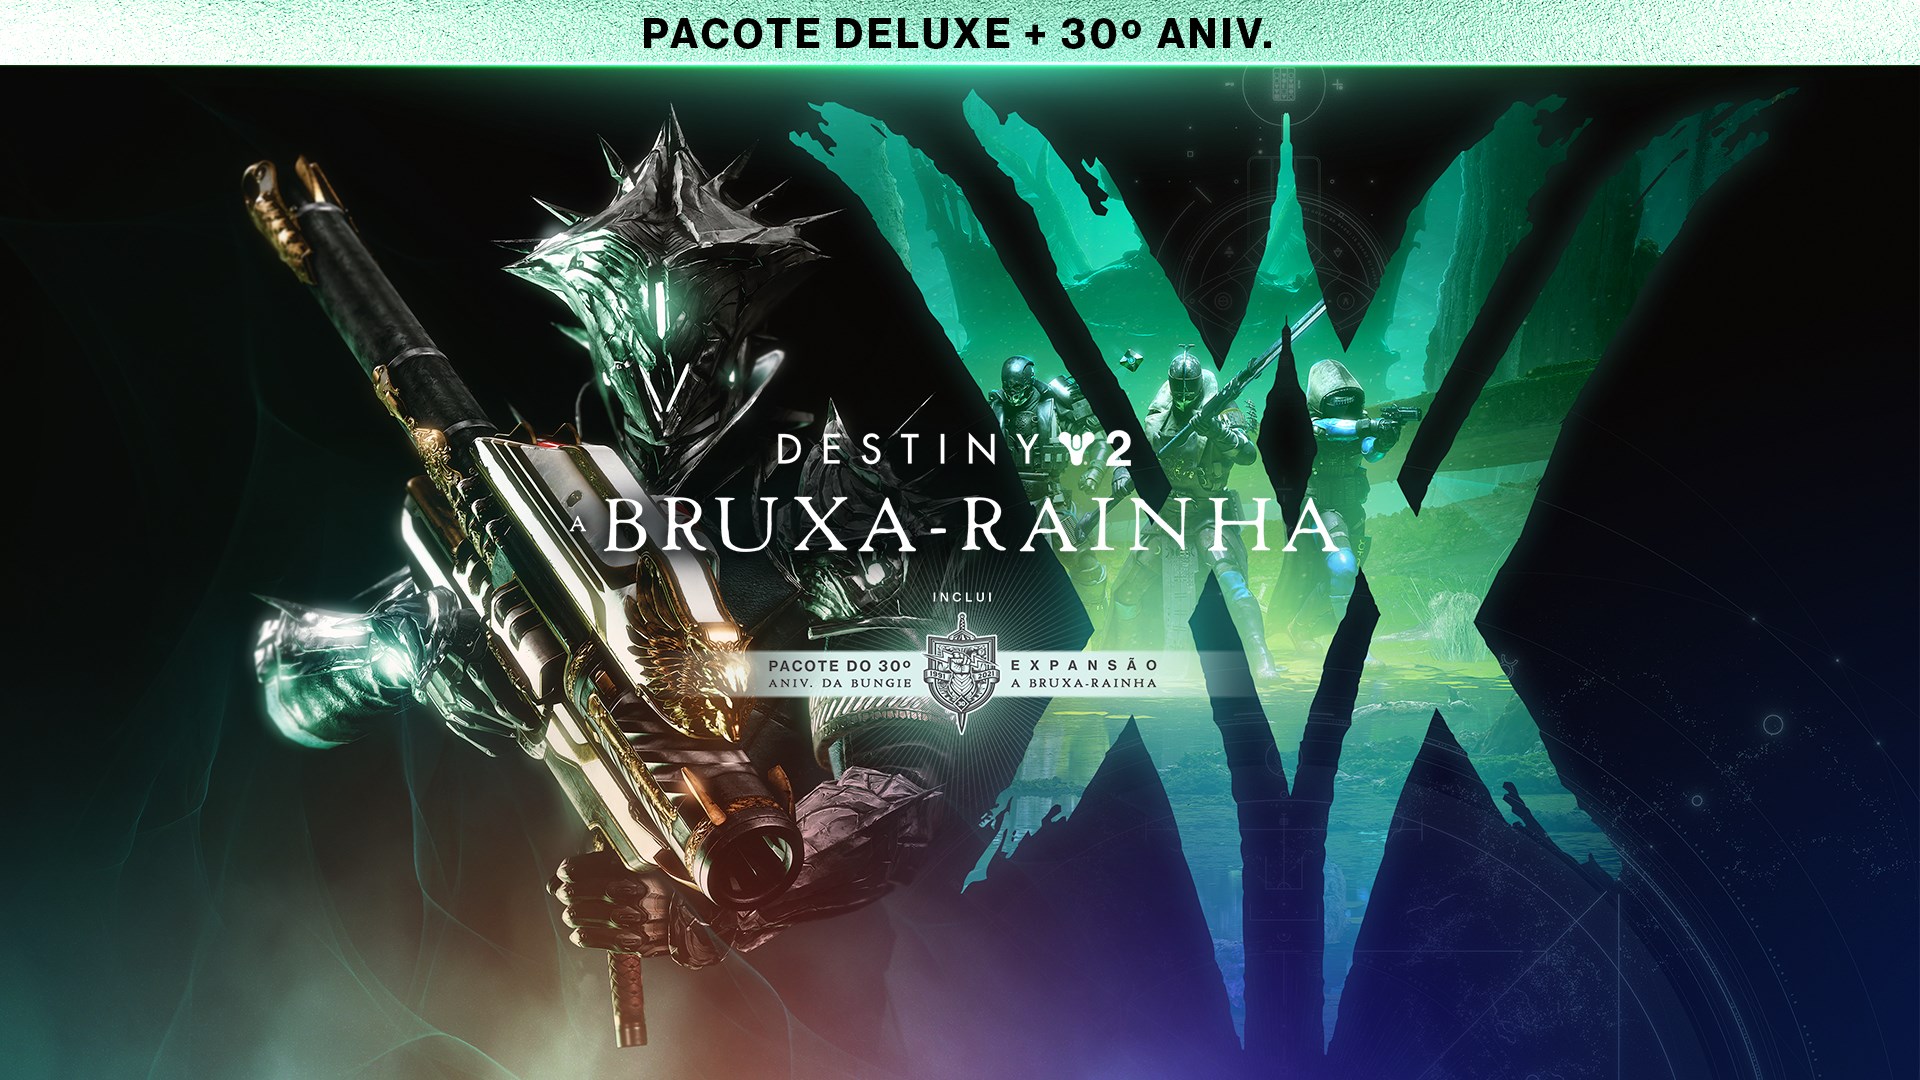 Destiny 2: Pacote A Bruxa-Rainha Deluxe + 30º Aniversário da Bungie